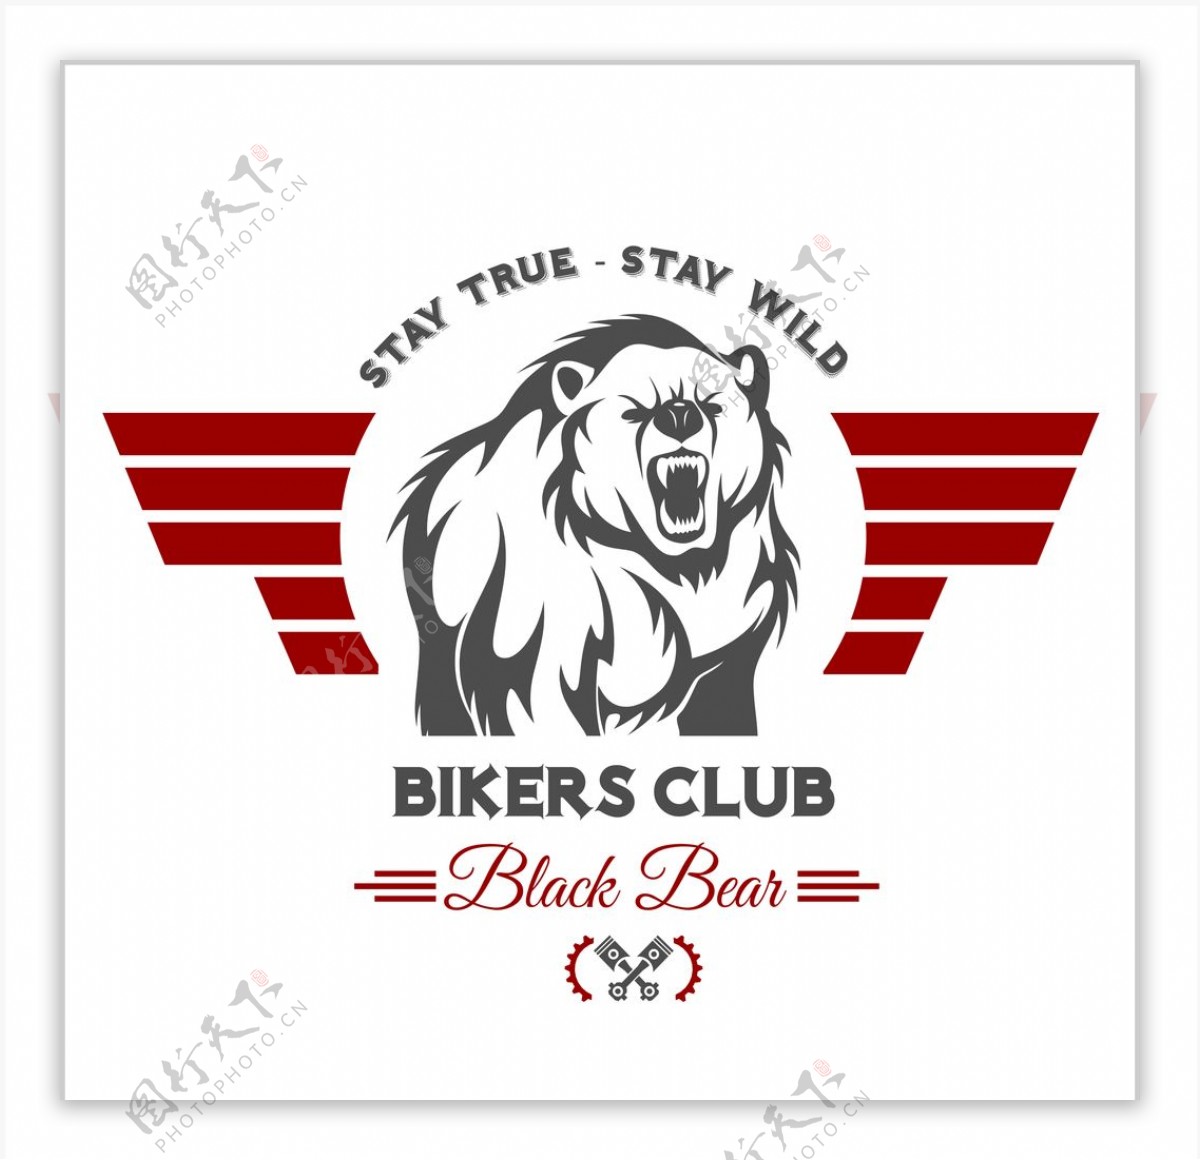 复古自行车俱乐部logo图标